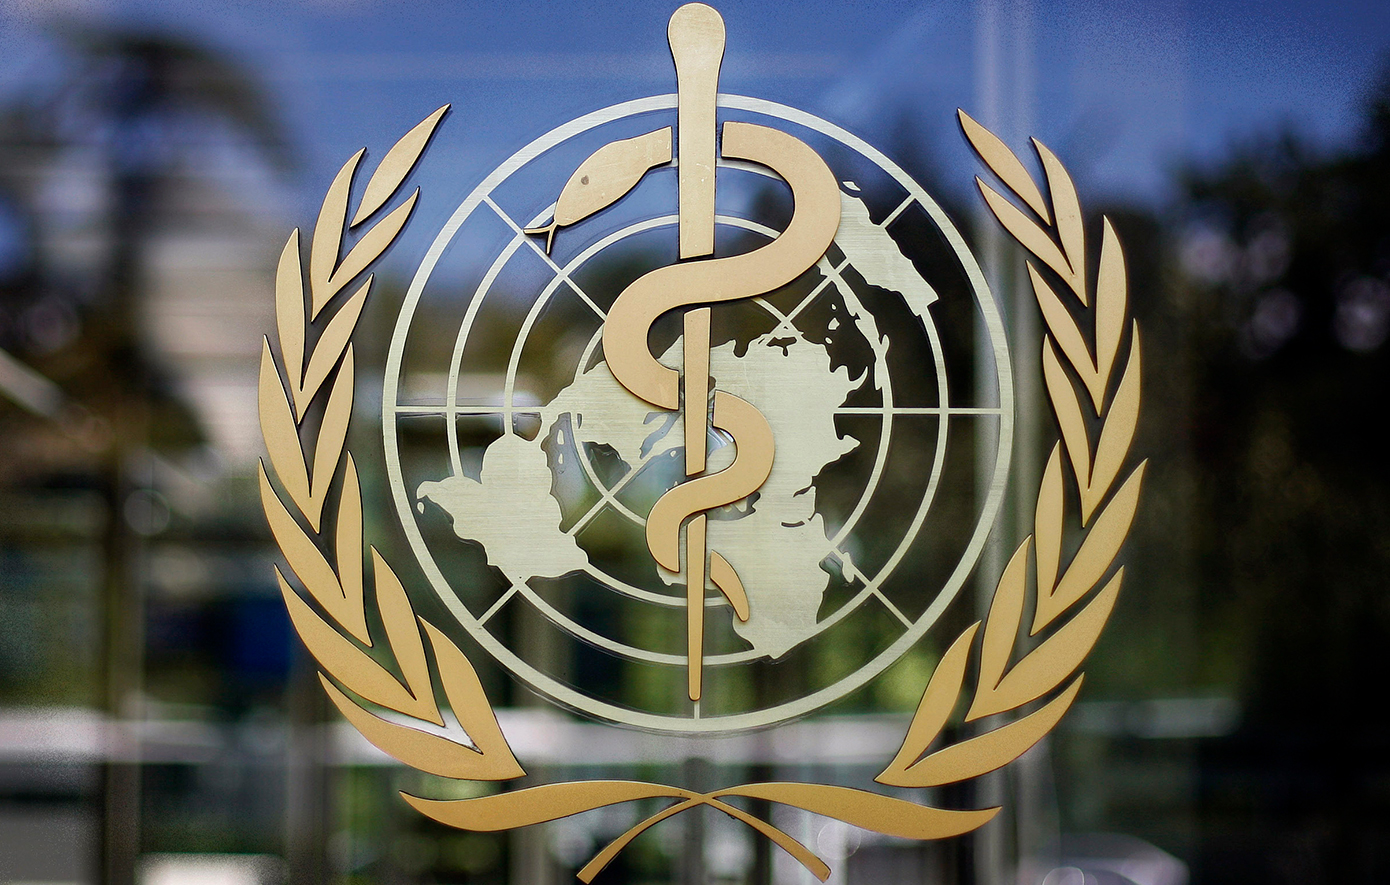 Η υπηρεσία αντιμετώπισης εκτάκτων αναγκών του ΠΟΥ αντιμετωπίζει «υπαρξιακές απειλές»  λόγω έλλειψης οικονομικών πόρων